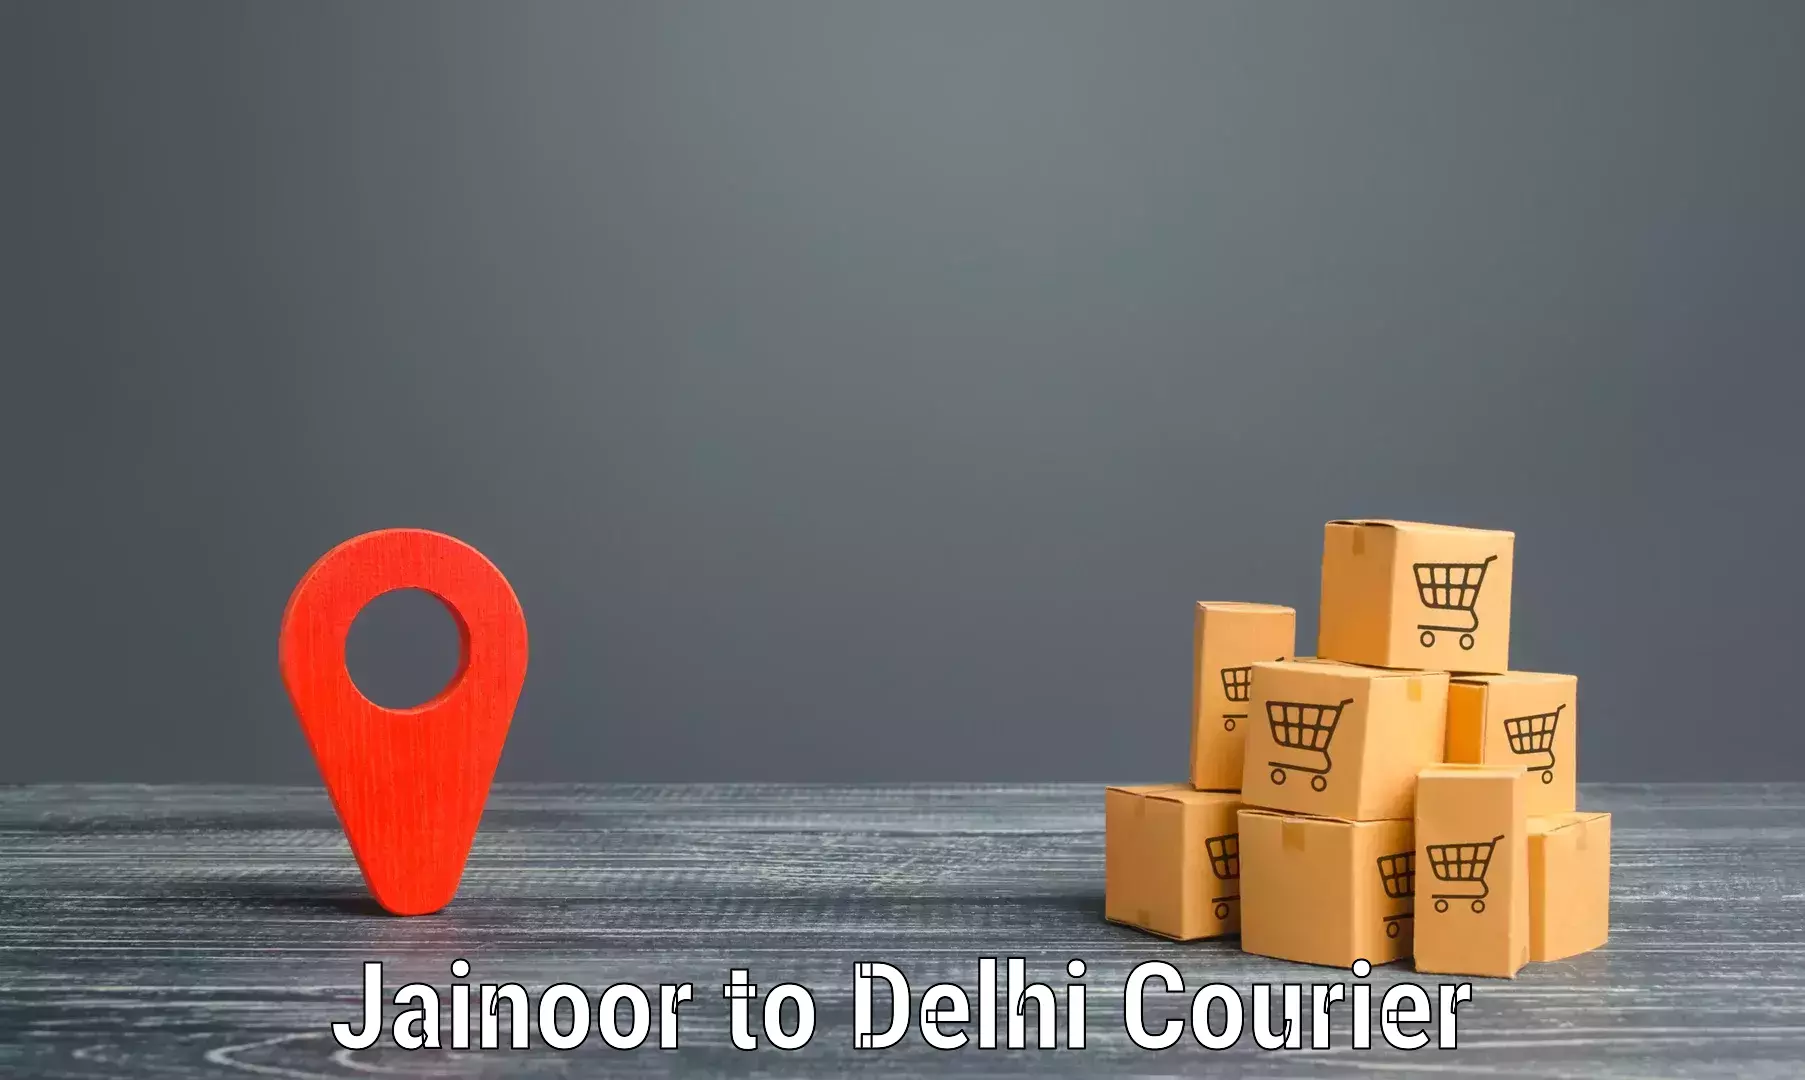 High-performance logistics Jainoor to Jawaharlal Nehru University New Delhi